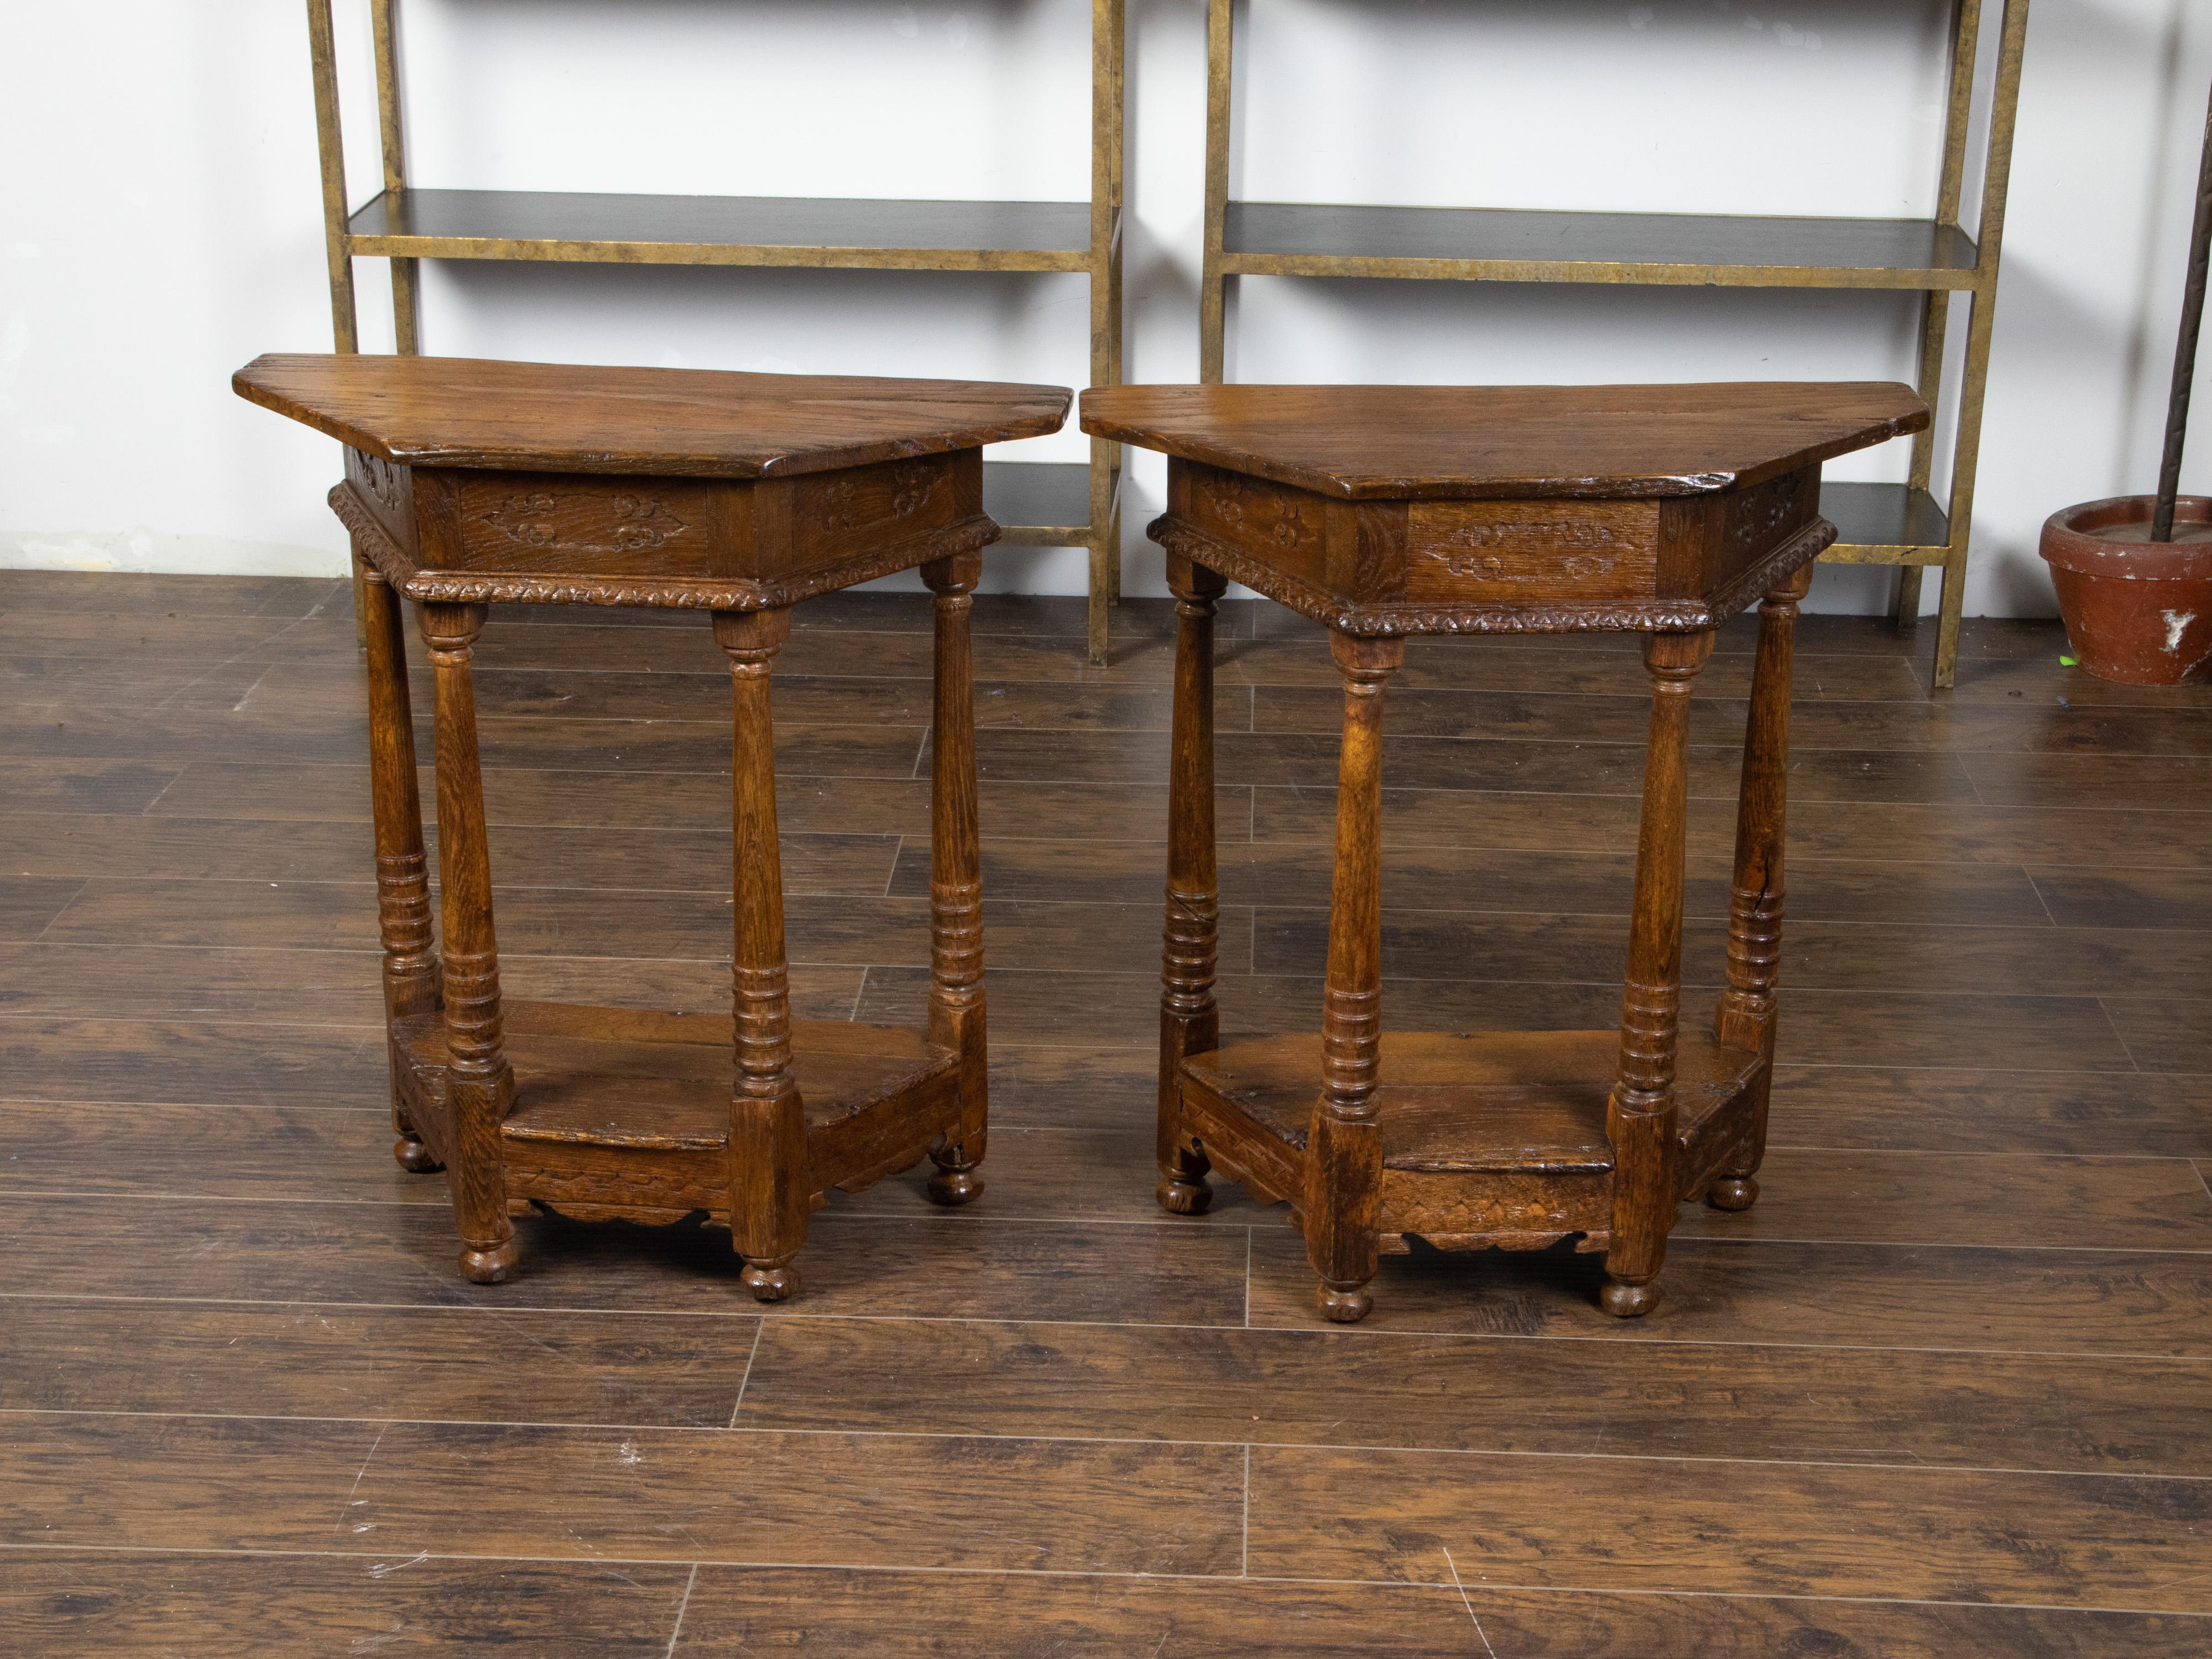 Ein Paar englische Demilune-Tische aus Eiche aus dem 19. Jahrhundert mit polygonalen Platten, geschnitzten Schürzen und gedrehten Beinen. Jedes dieser Eichenholz-Deilinenpaar wurde im 19. Jahrhundert in England hergestellt und weist eine polygonale